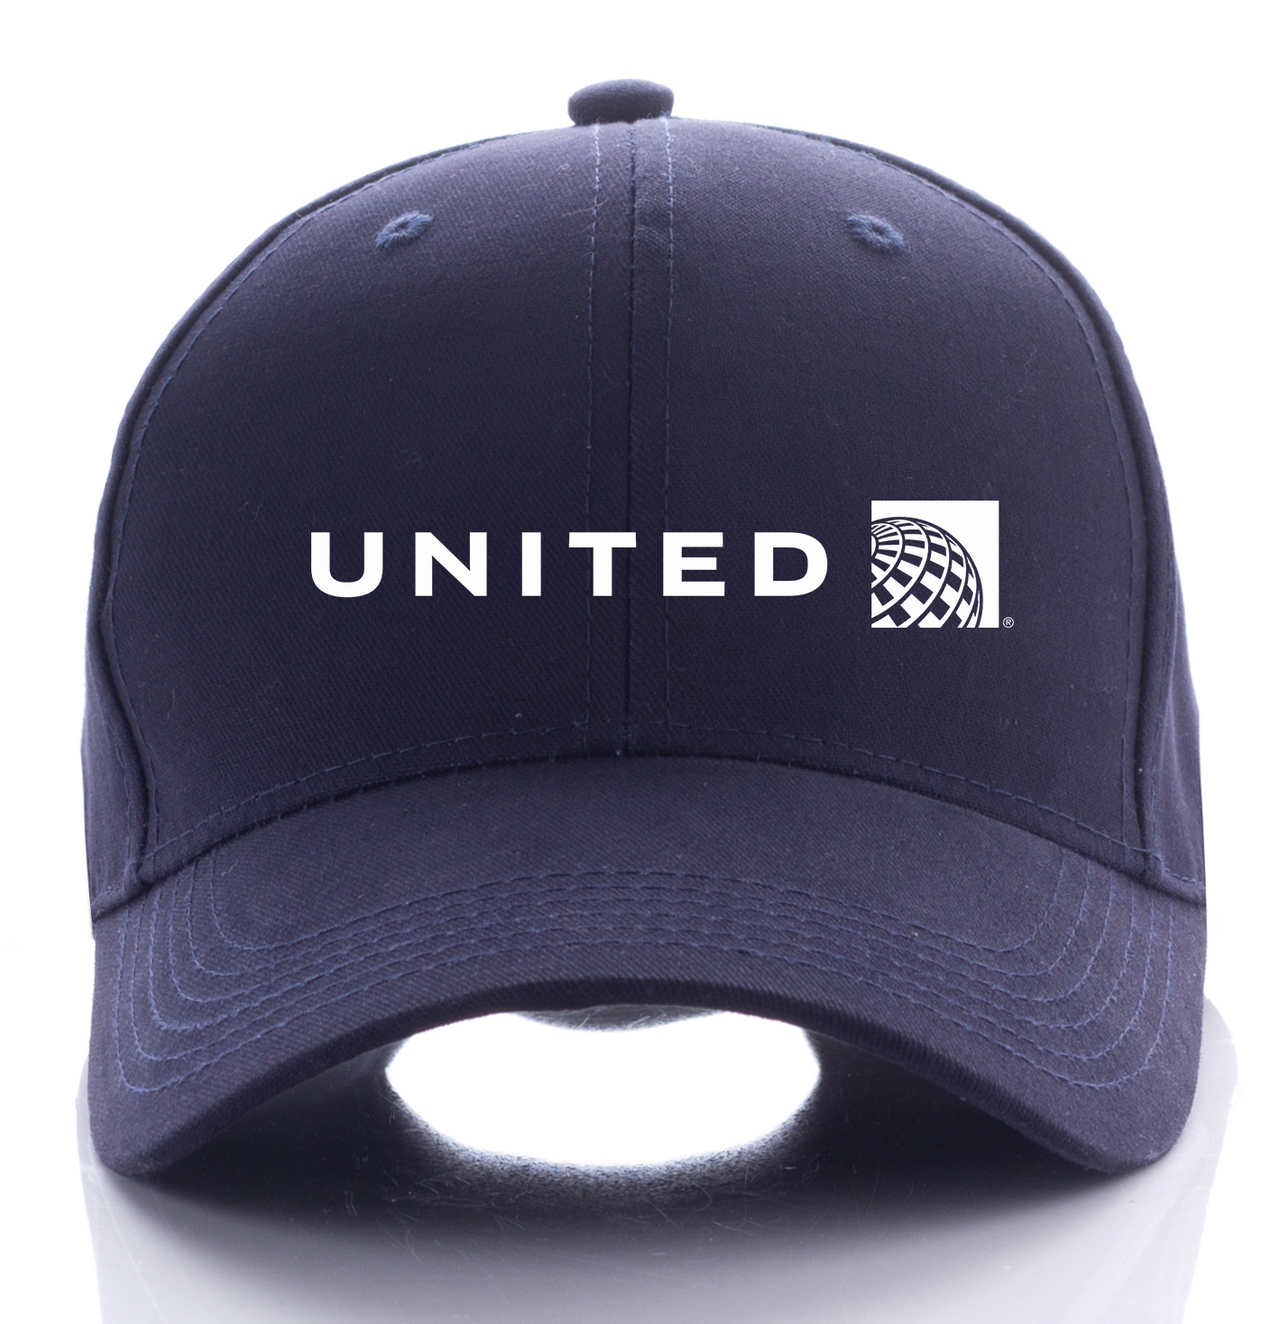 UNITED AIRLINE DESIGNED CAP